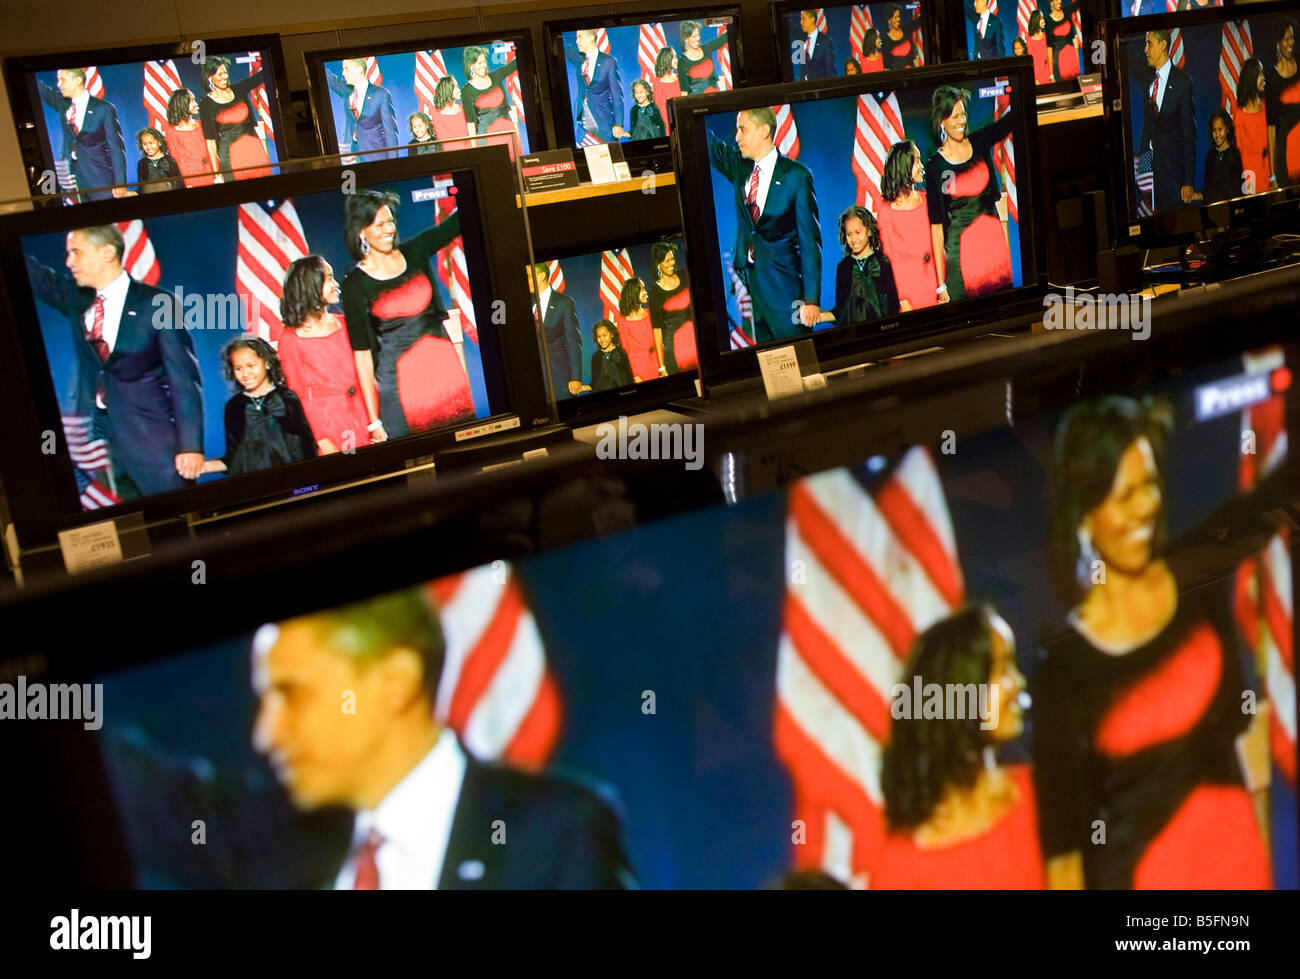 Barack Obama und Familie nach Wahlsieg auf BBC News TV-Bildschirme in der Londoner John Lewis Department Store gesehen Stockfoto